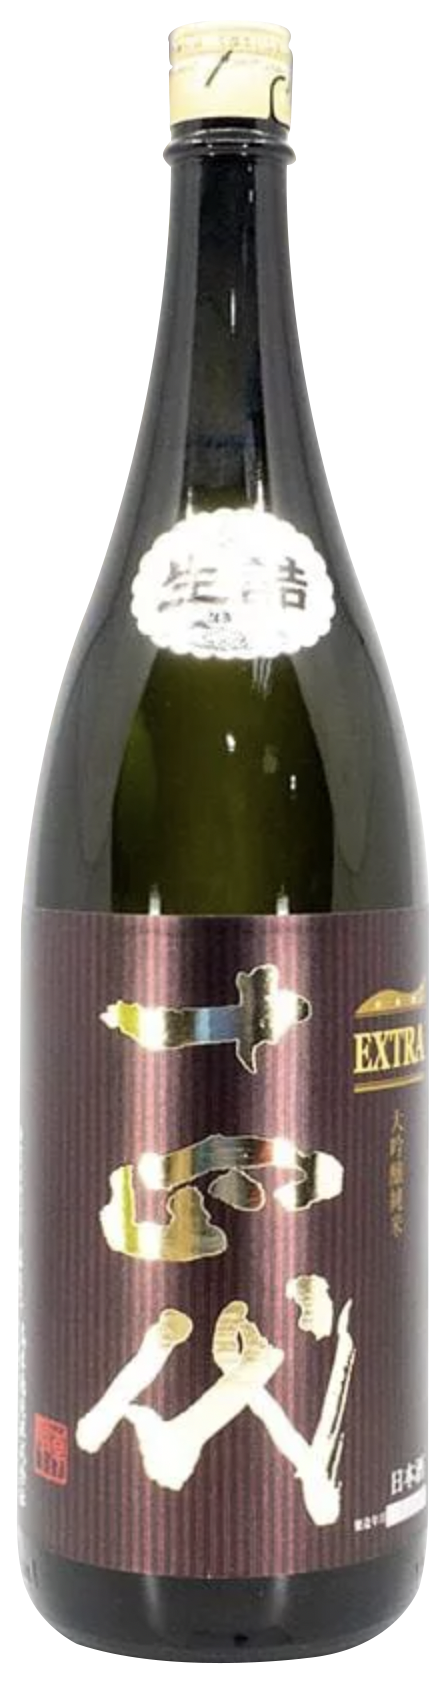 高木酒造株式會社十四代EXTRA 純米大吟釀1.8L－專家推薦清酒日本酒Sake 